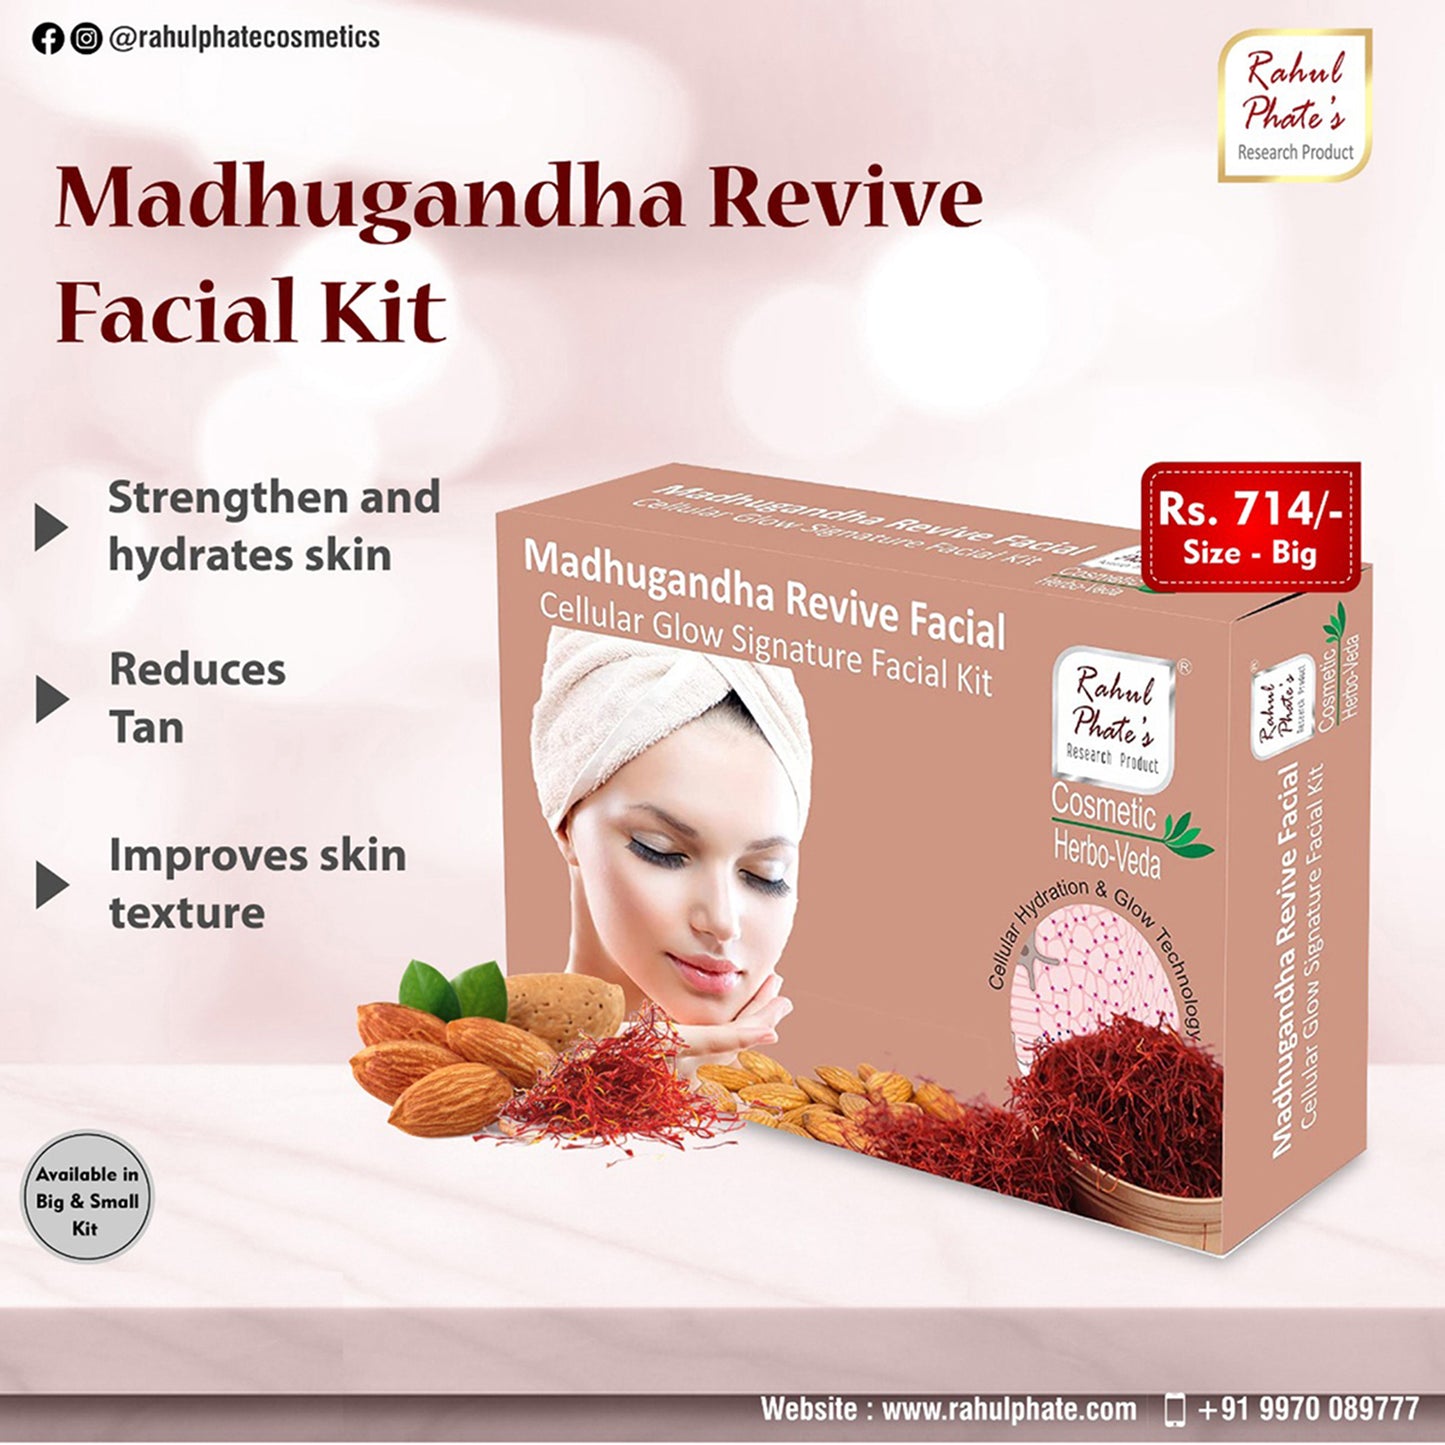 Madhugandha Facial Kit